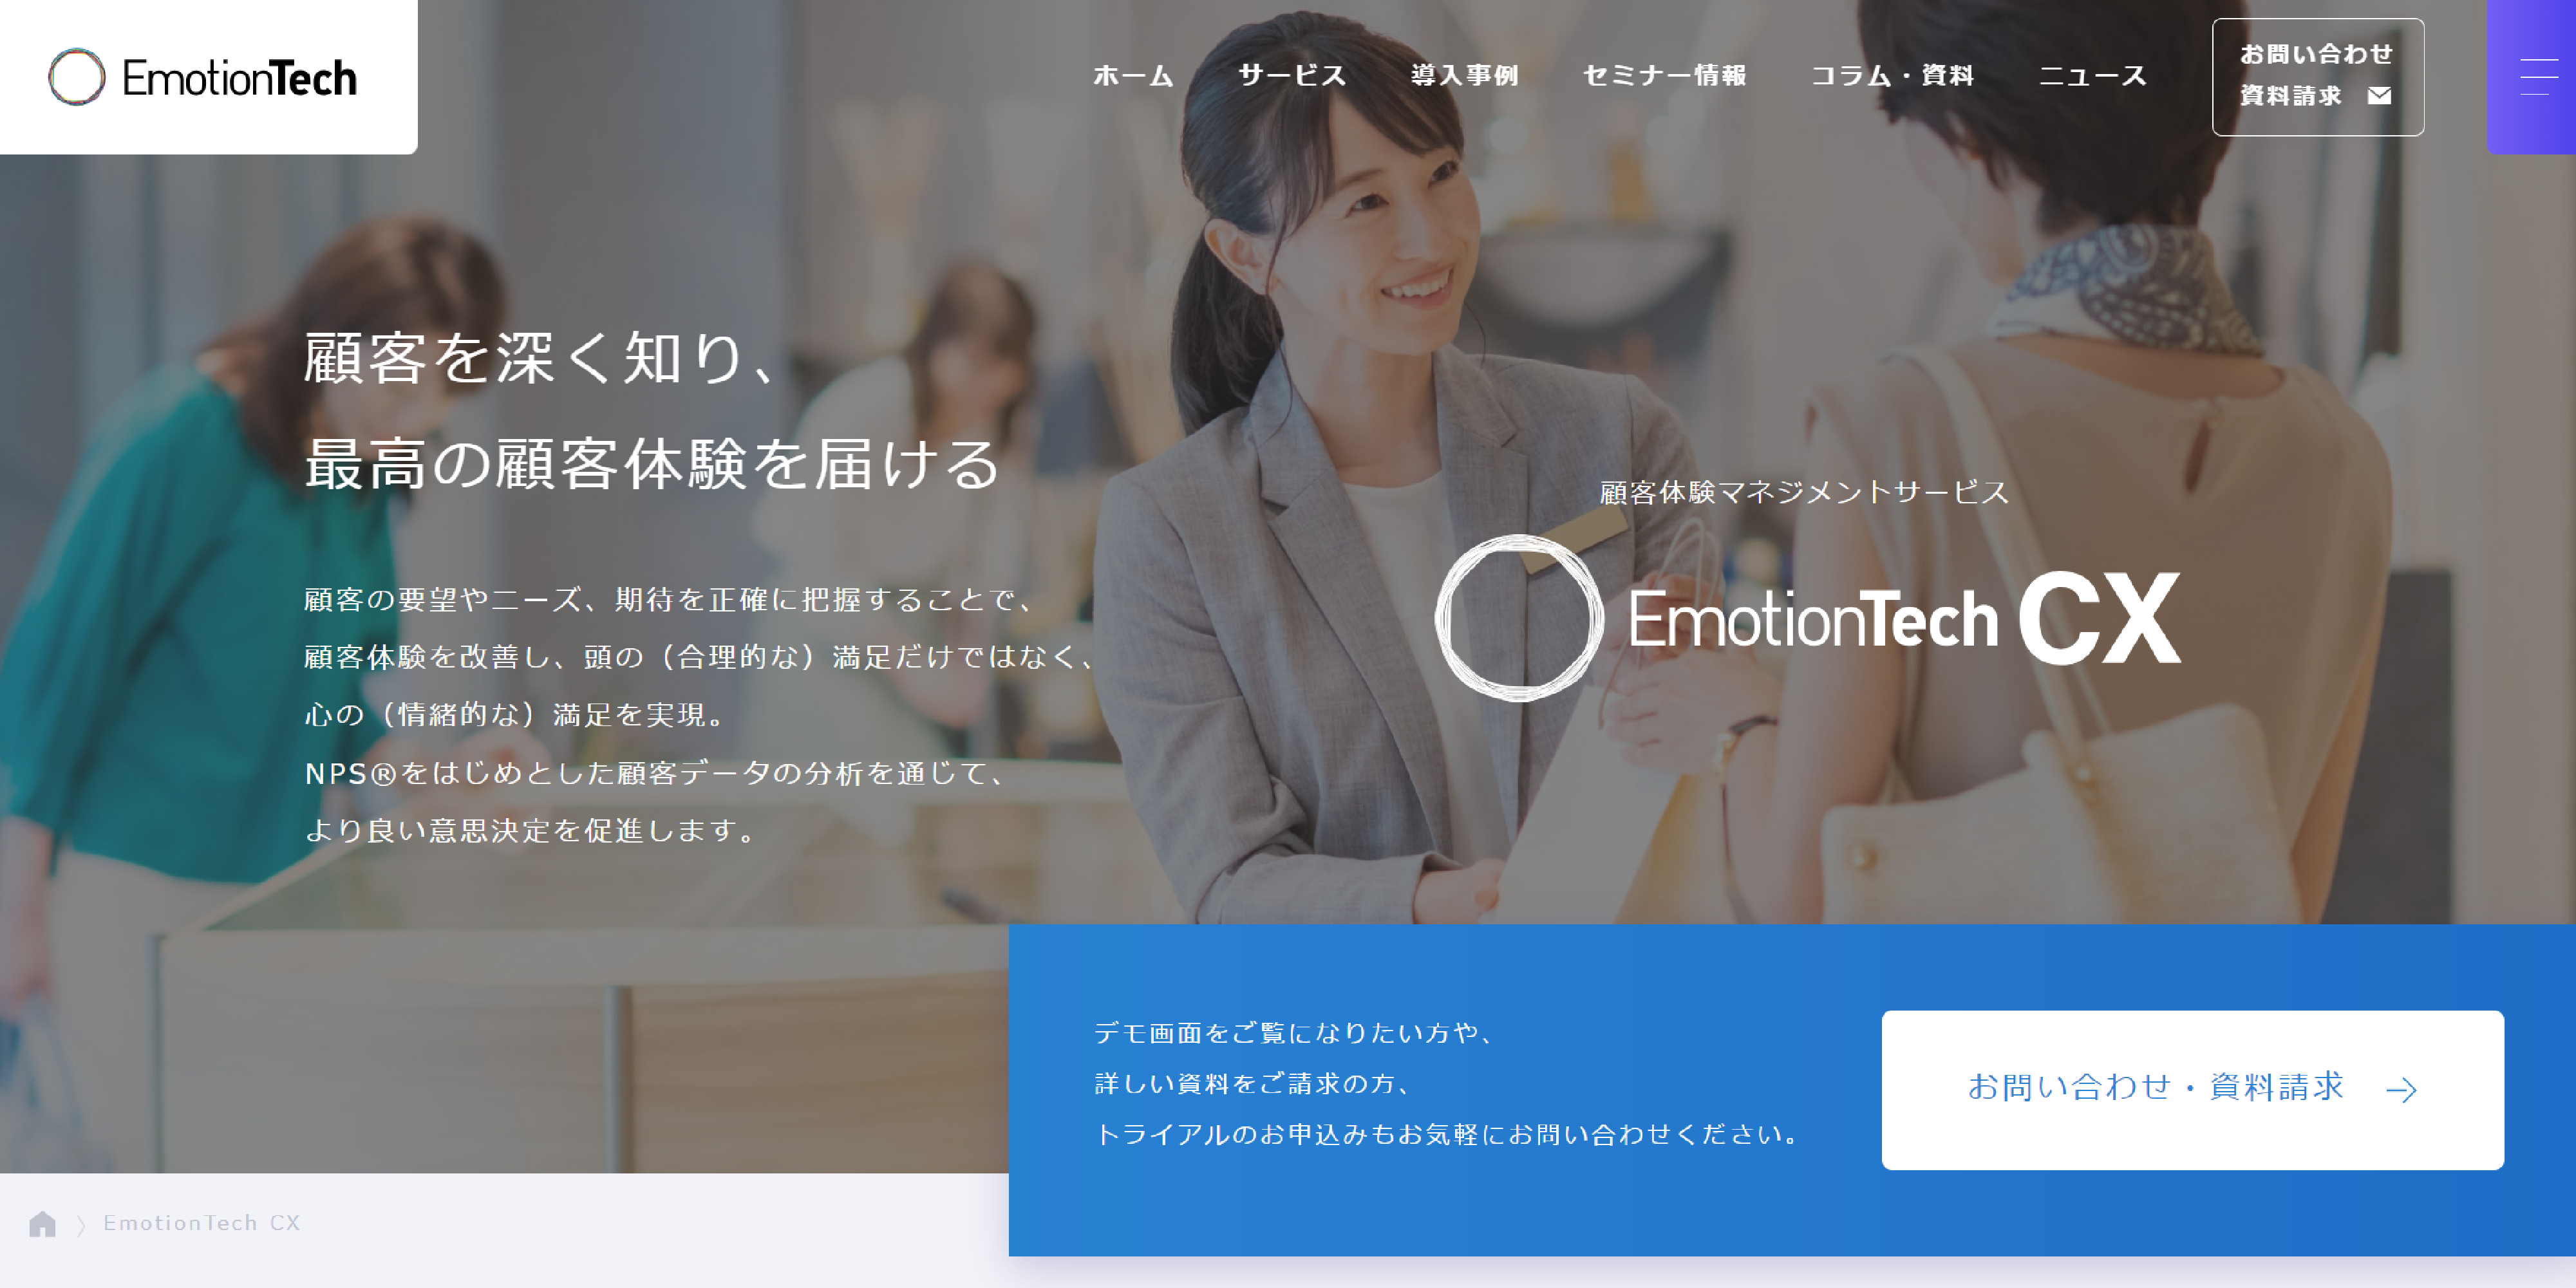 「EmotionTech CX」の製品サイトファーストビュー